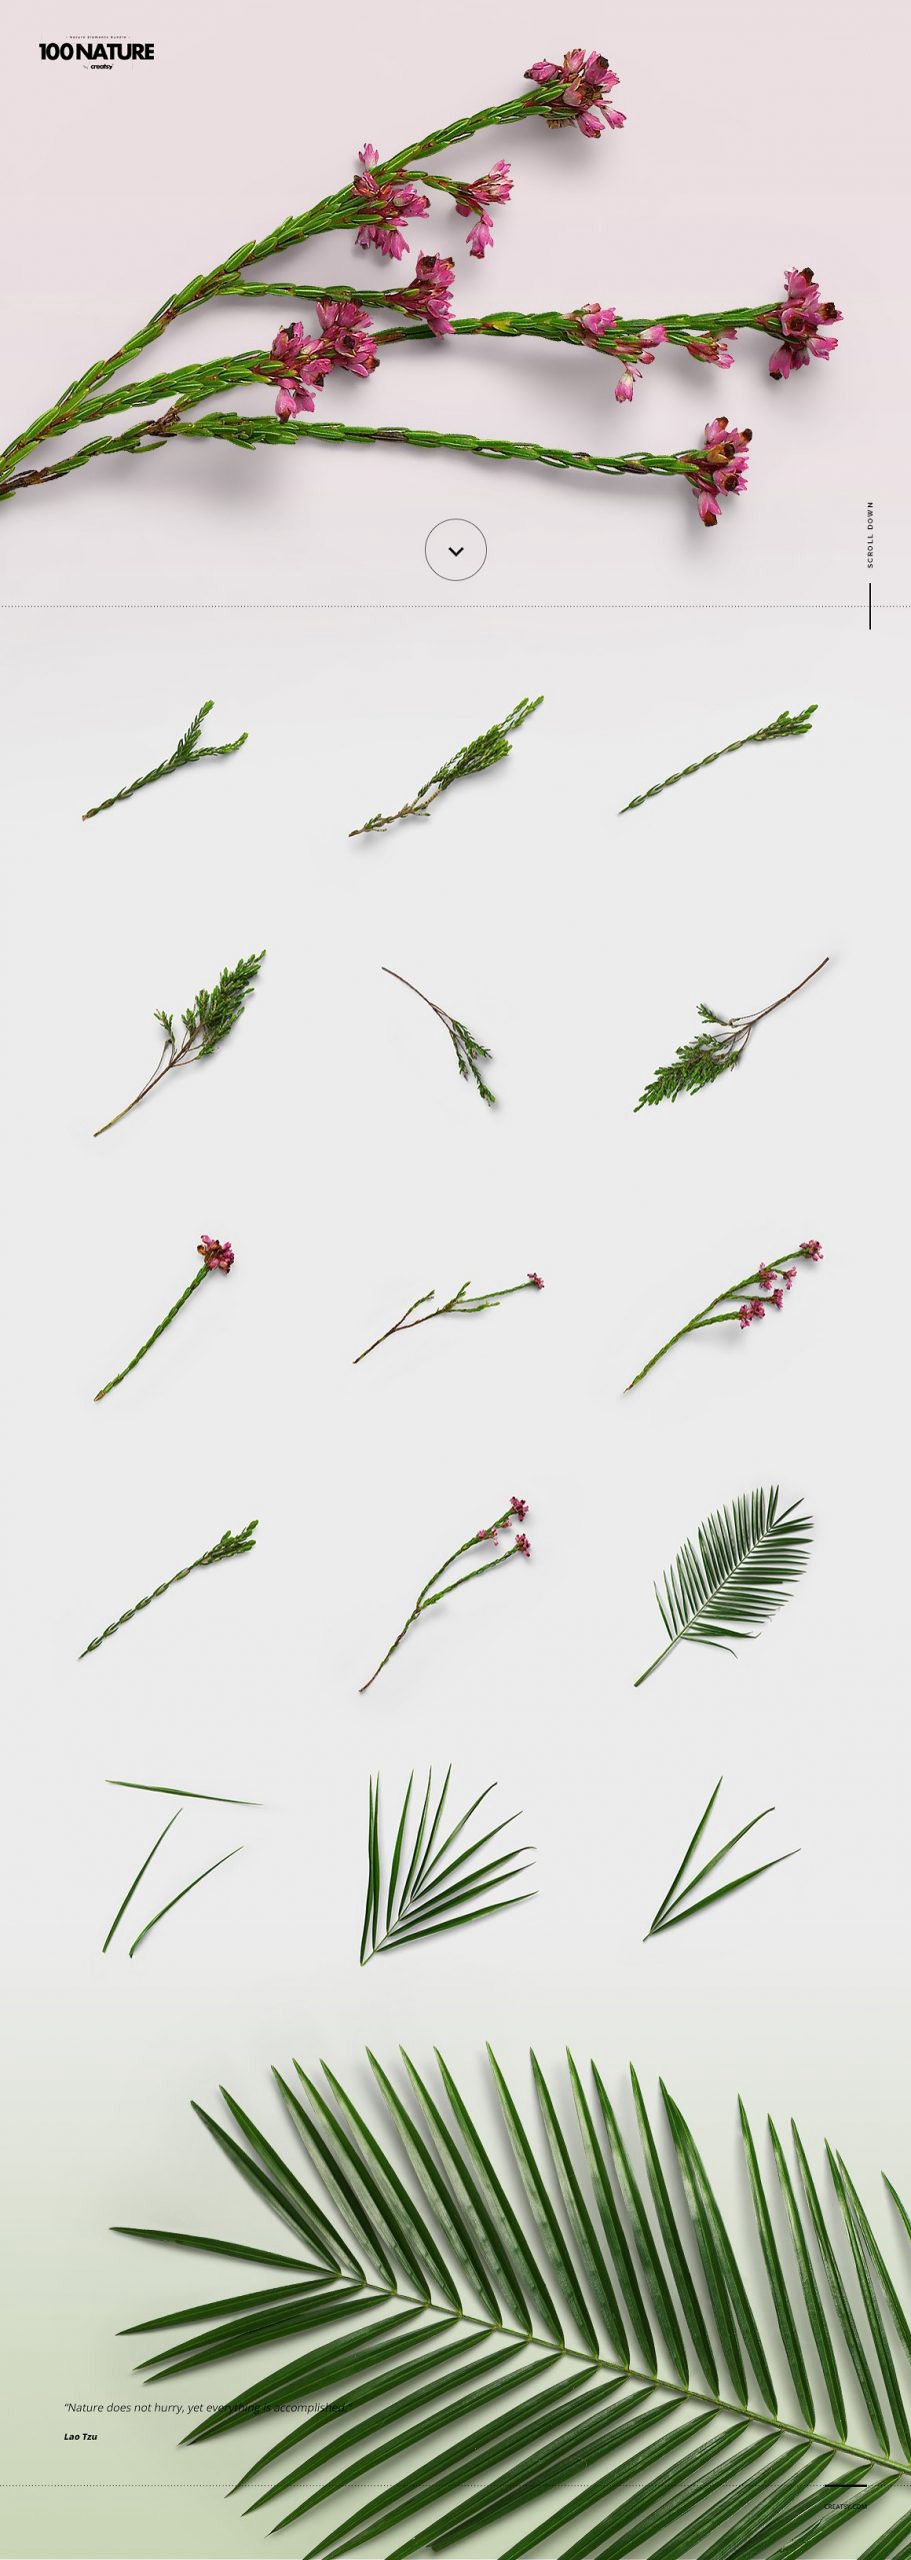 100款绿色花卉自然植物元素tif格式高质量图片素材套装 图片素材 第4张